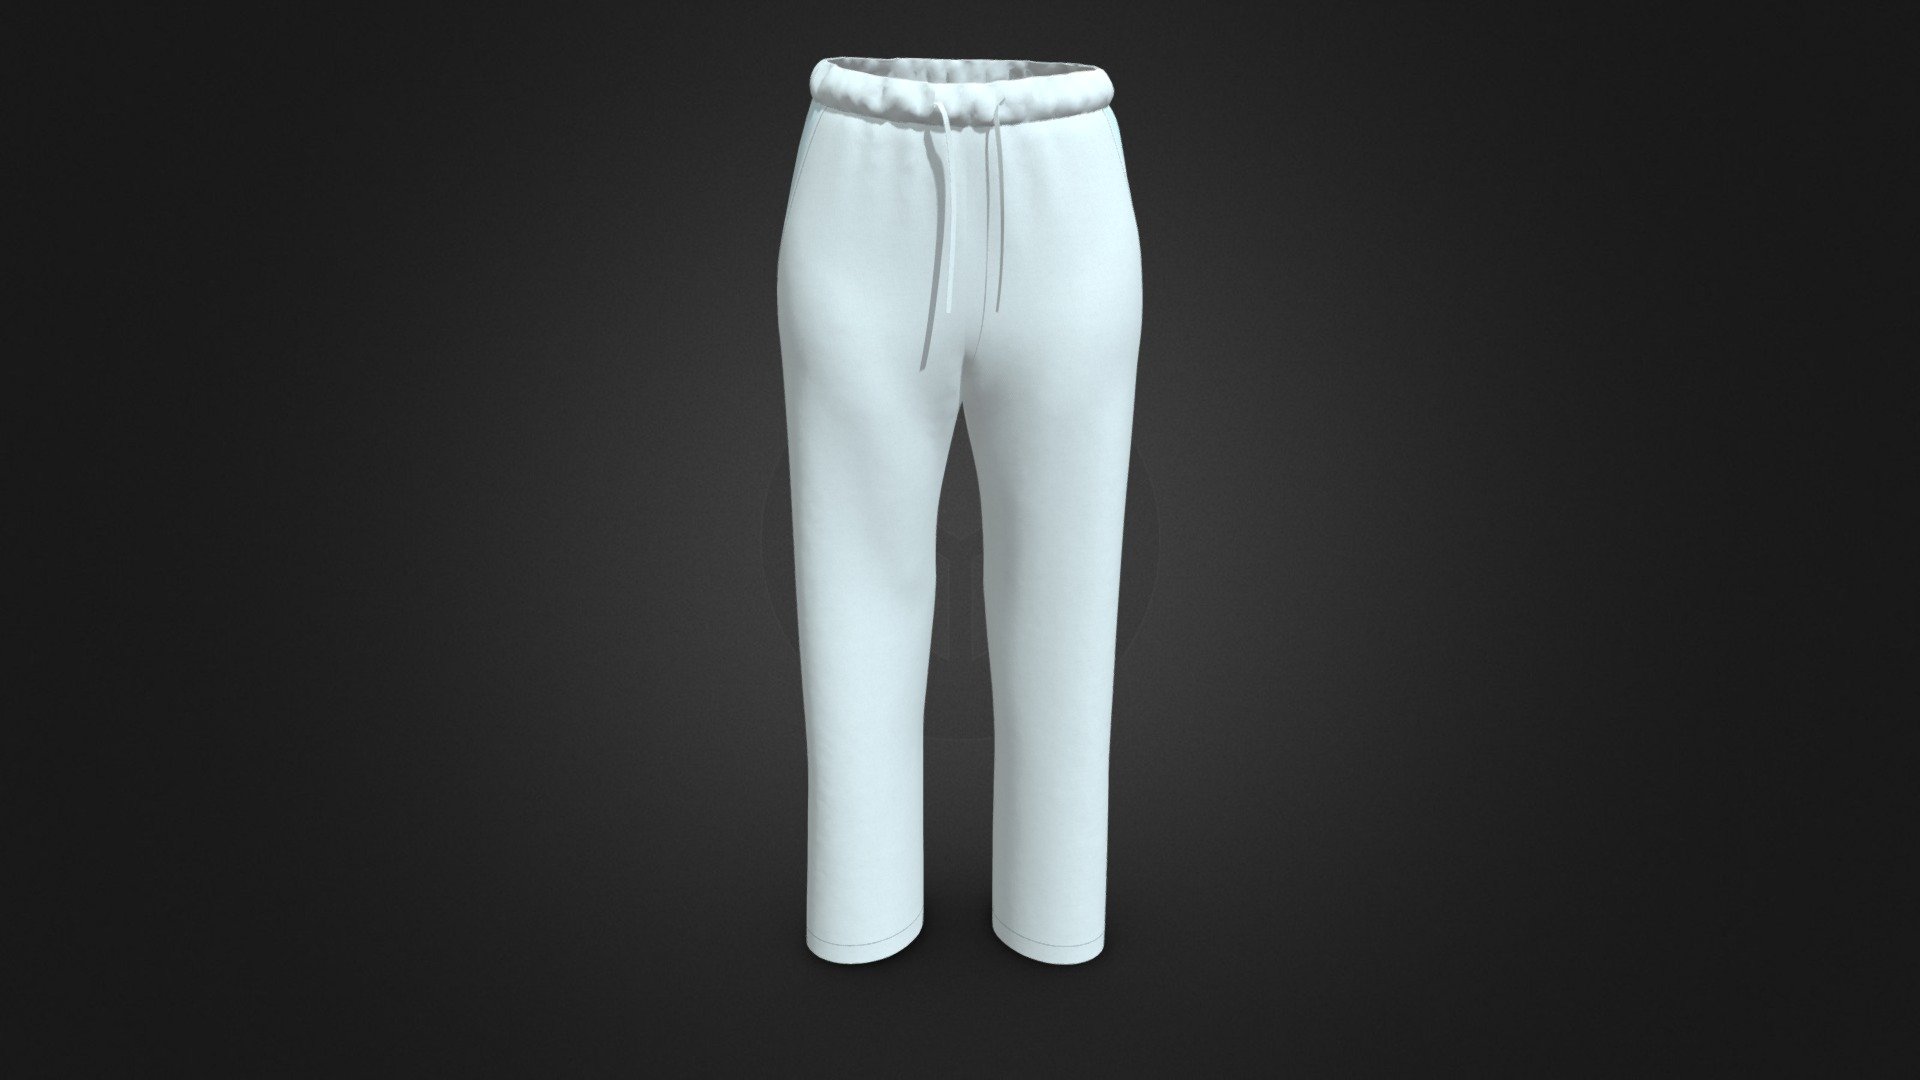 Easywear pants - Easywear pants - Buy Royalty Free 3D model by number1d3d 3d model